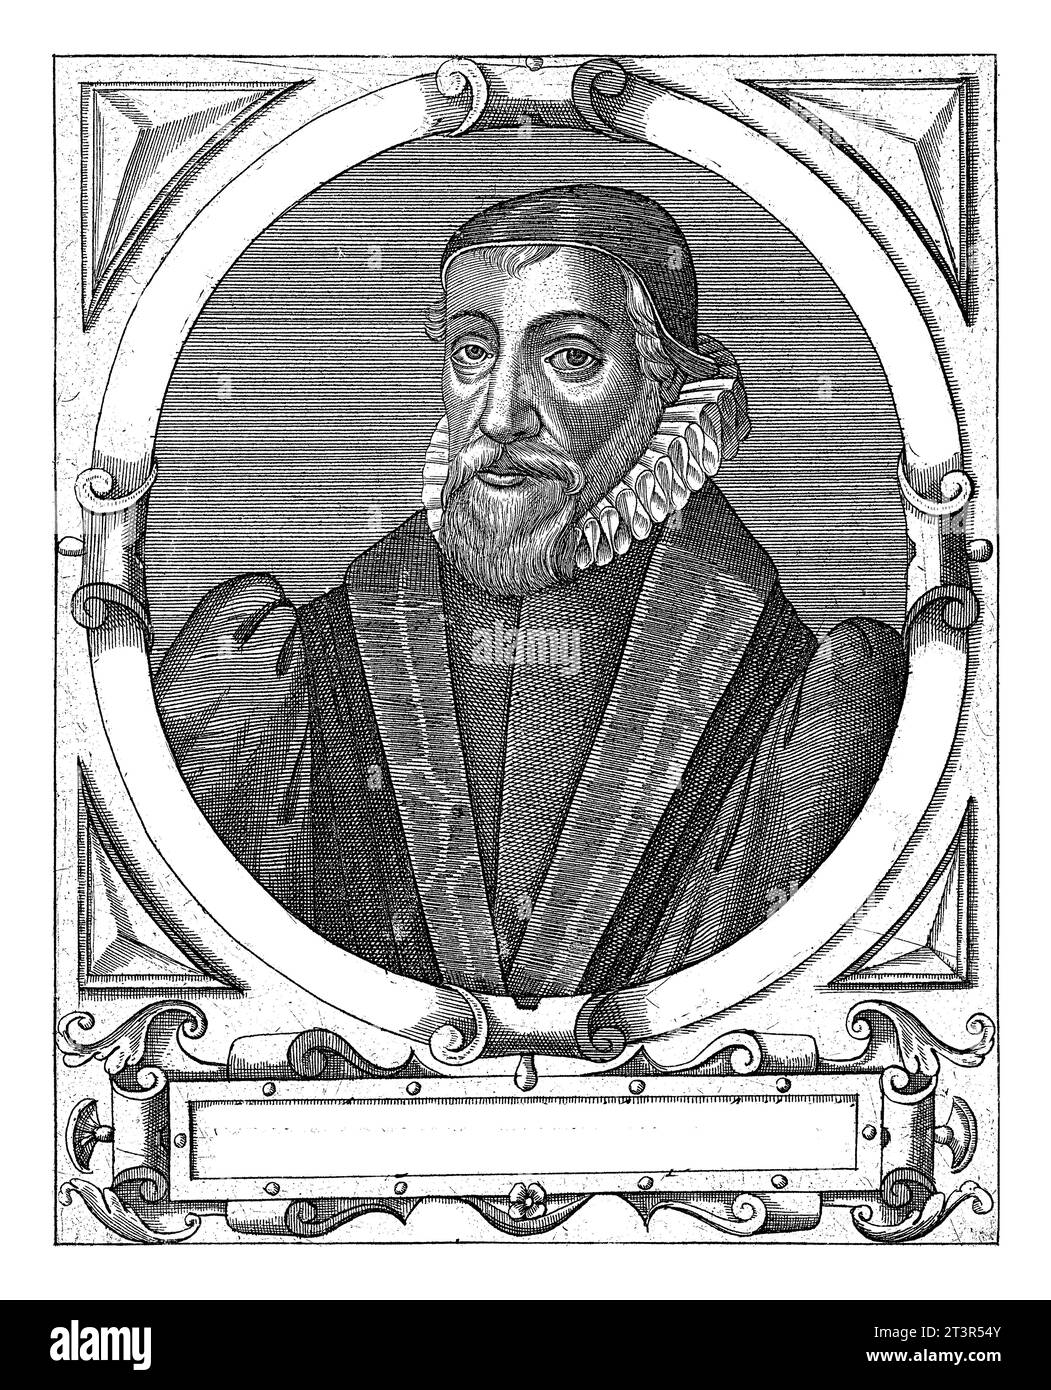 Porträt von Richard Stock, Theodor de Bry, nach Jean Jacques Boissard, ca. 1597 - ca. 1599 Porträt des englischen Theologen Richard Stock. Stockfoto